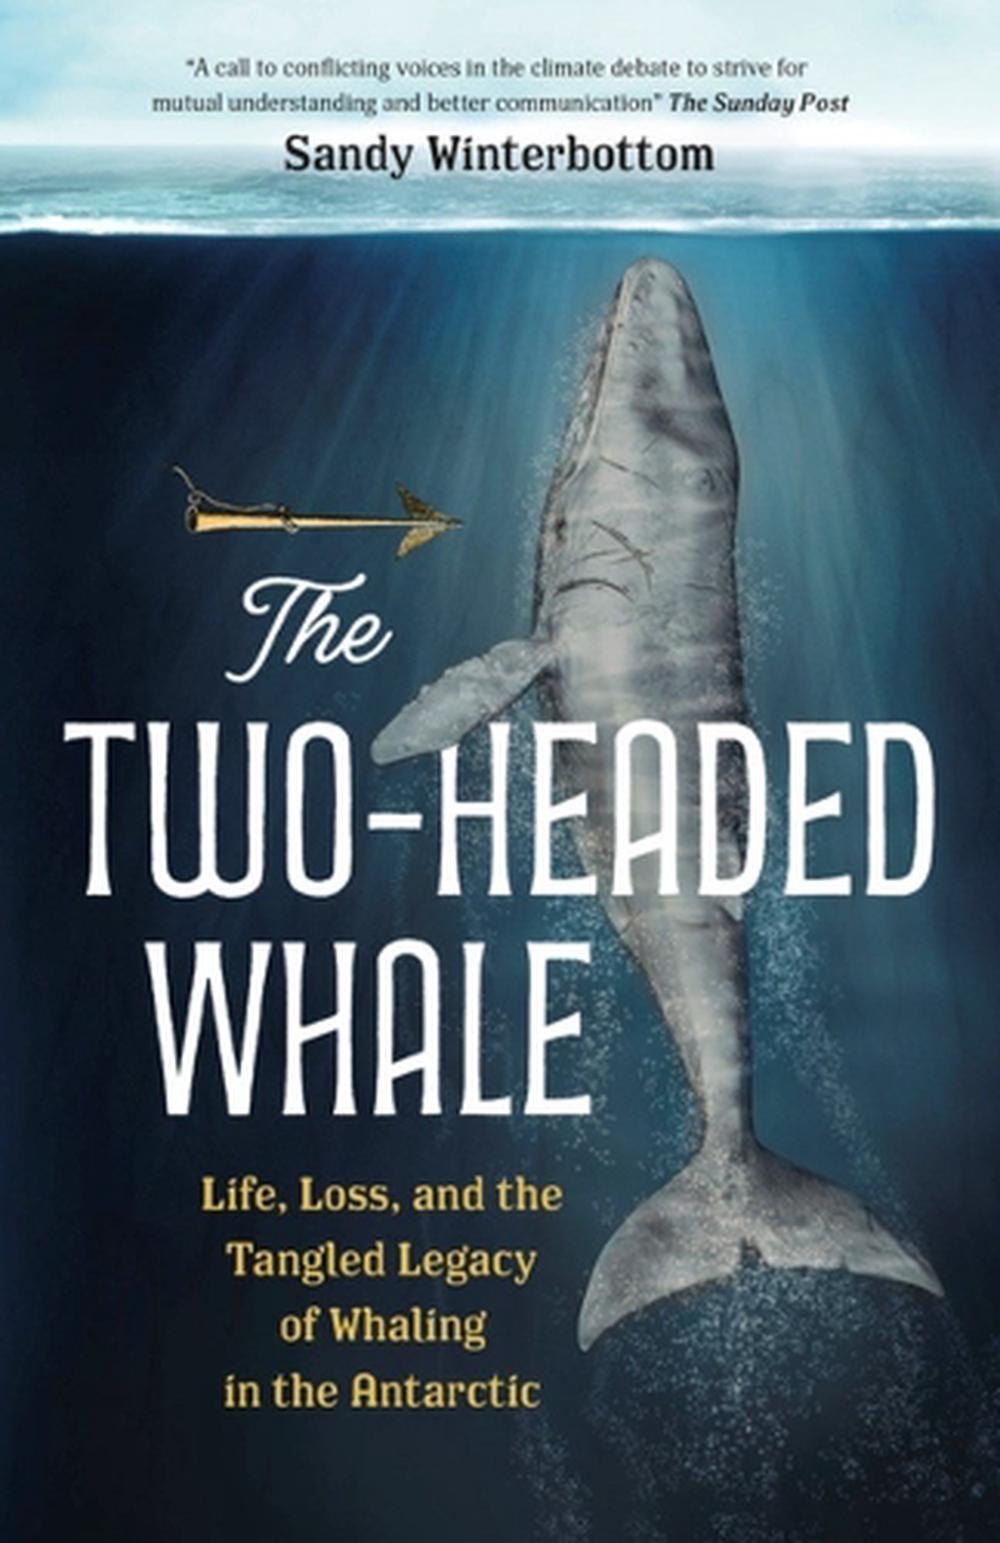 Der zweiköpfige Wal: Leben, Verlust und das verworrene Erbe des Walfangs in der Antar - Bild 1 von 1